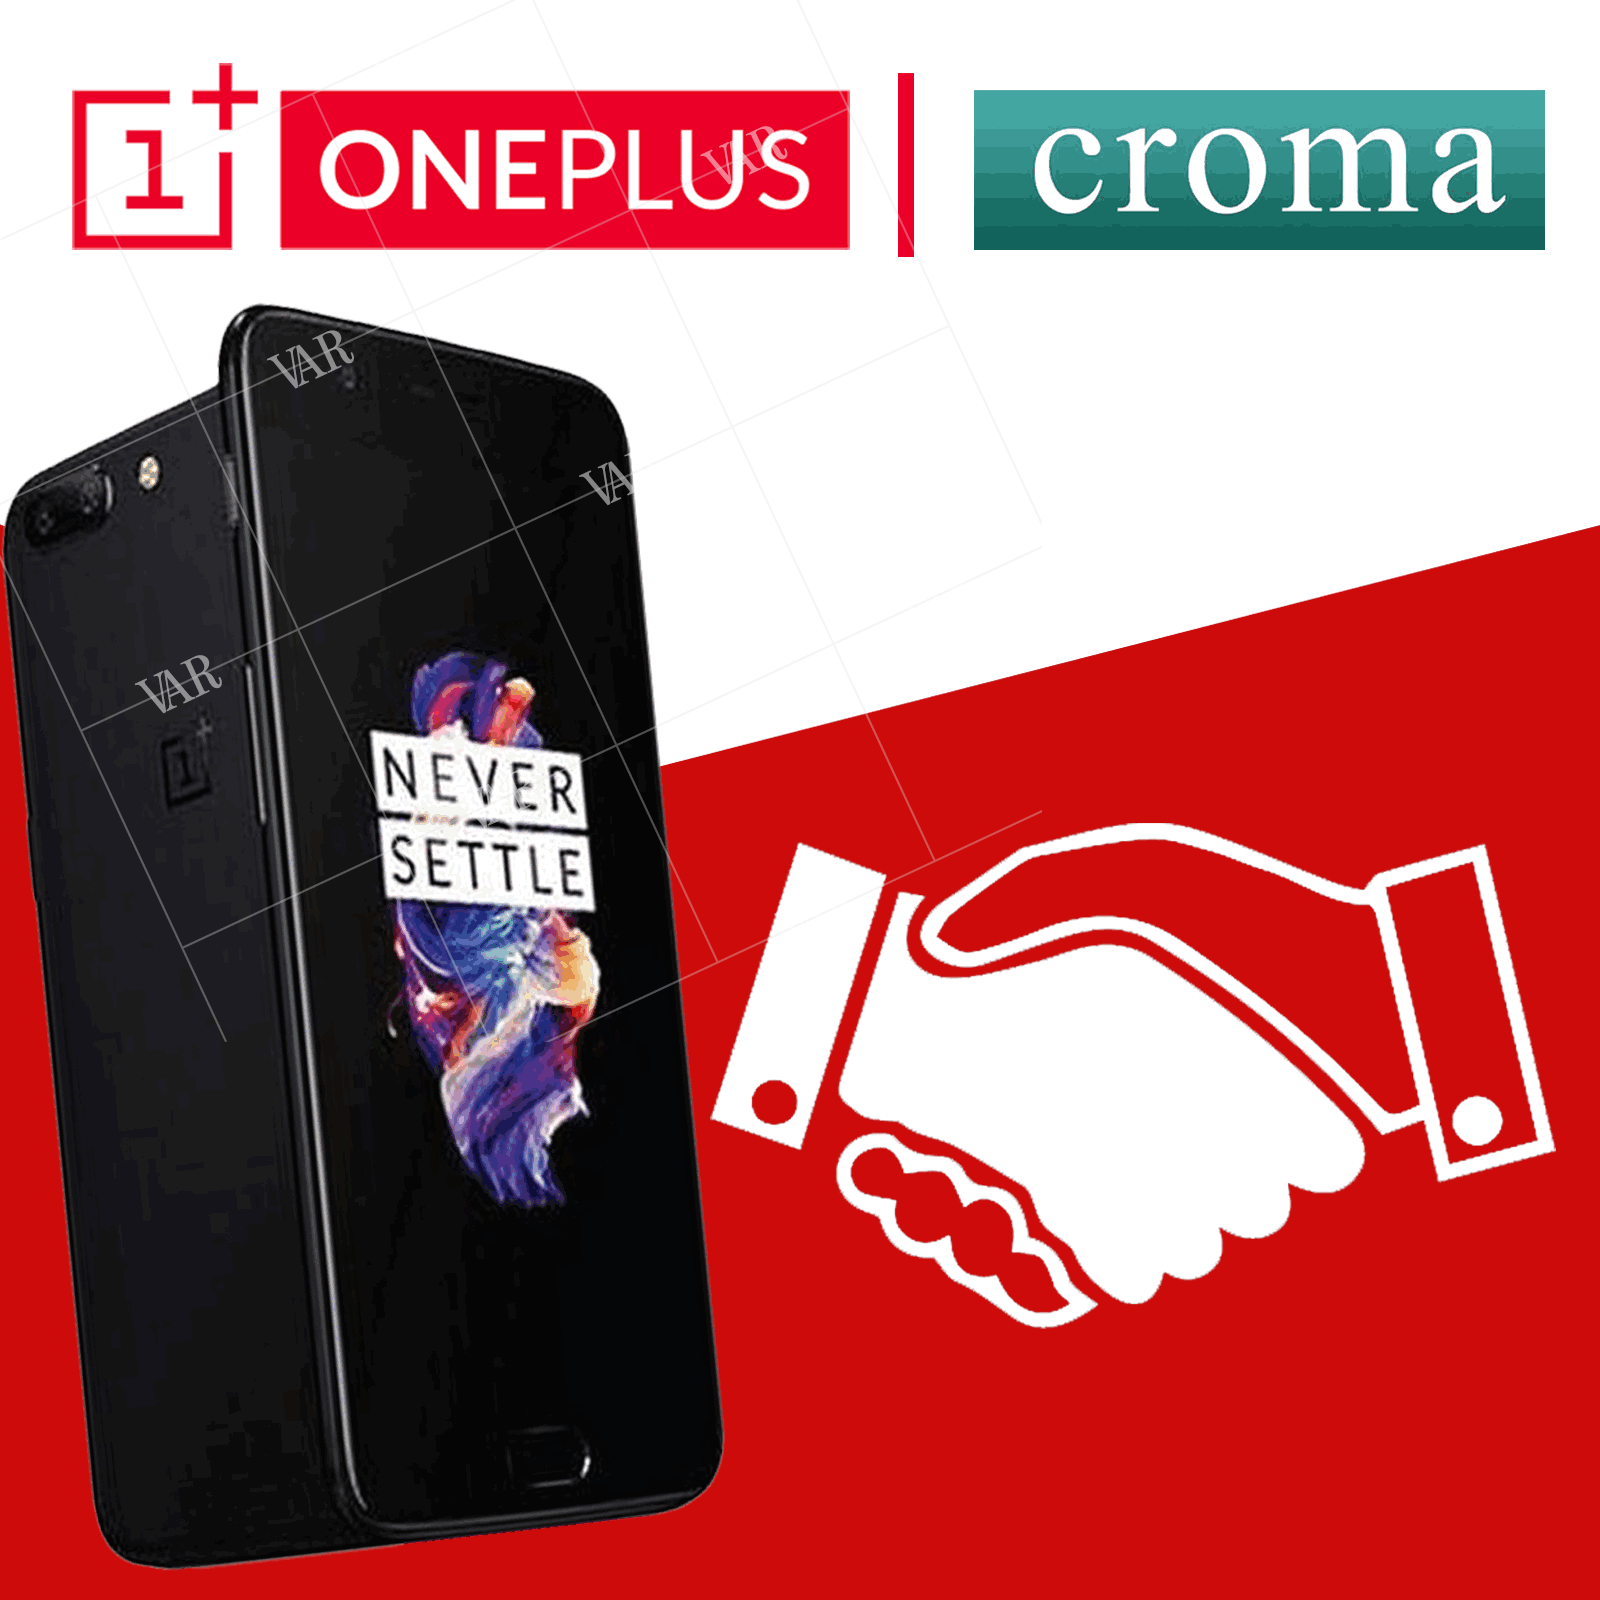 oneplus strikes partnership with croma